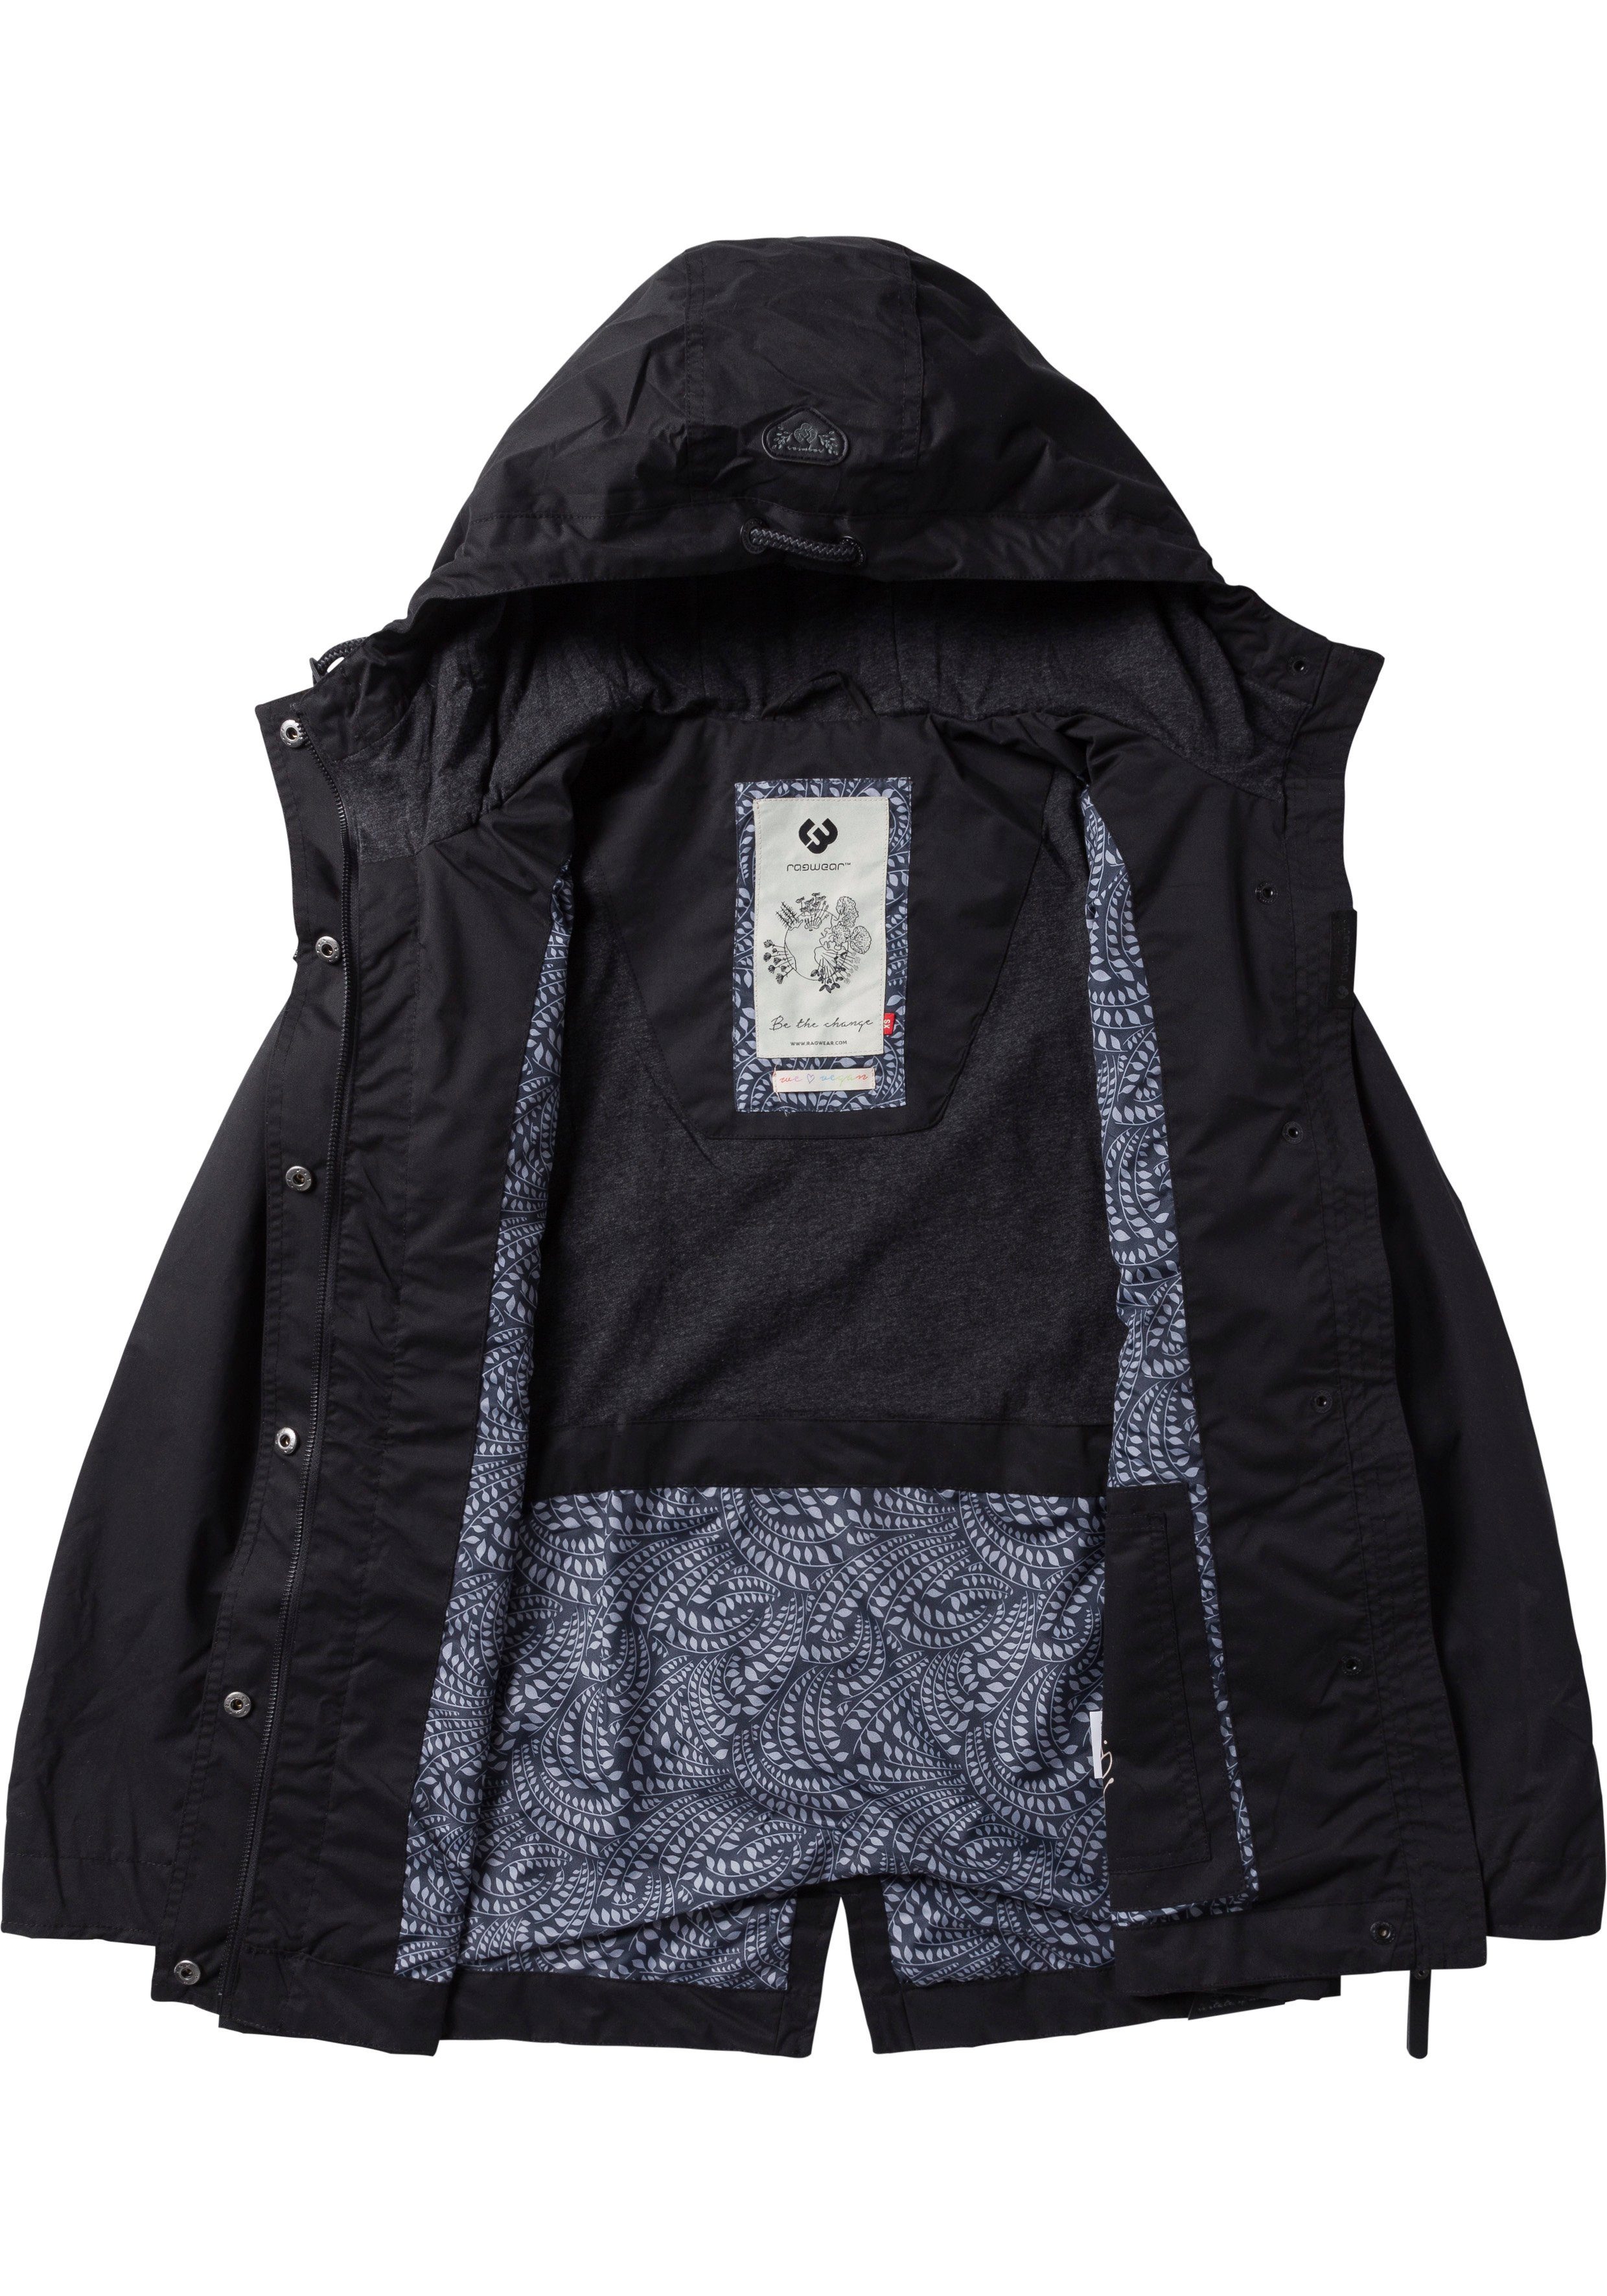 LENCA stylische Ragwear black 1010 fabric Waterproof Übergangsjacke Funktionsjacke